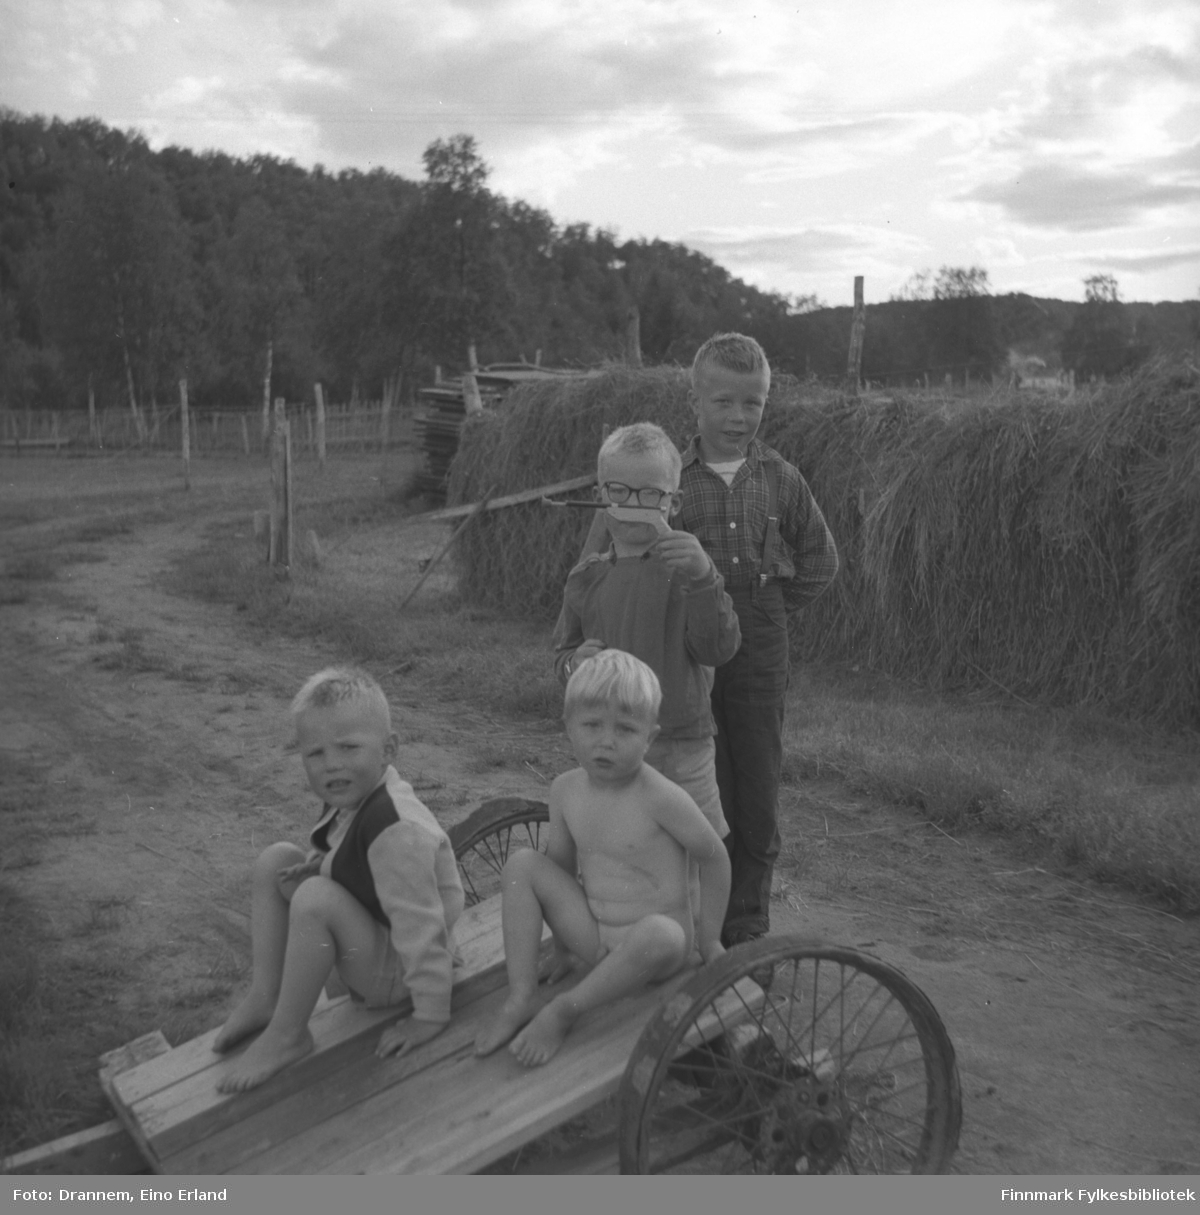 Fire små gutter fototgrafert på en gårdsvei. Dette kan være sønner av Alfred Karikoski.